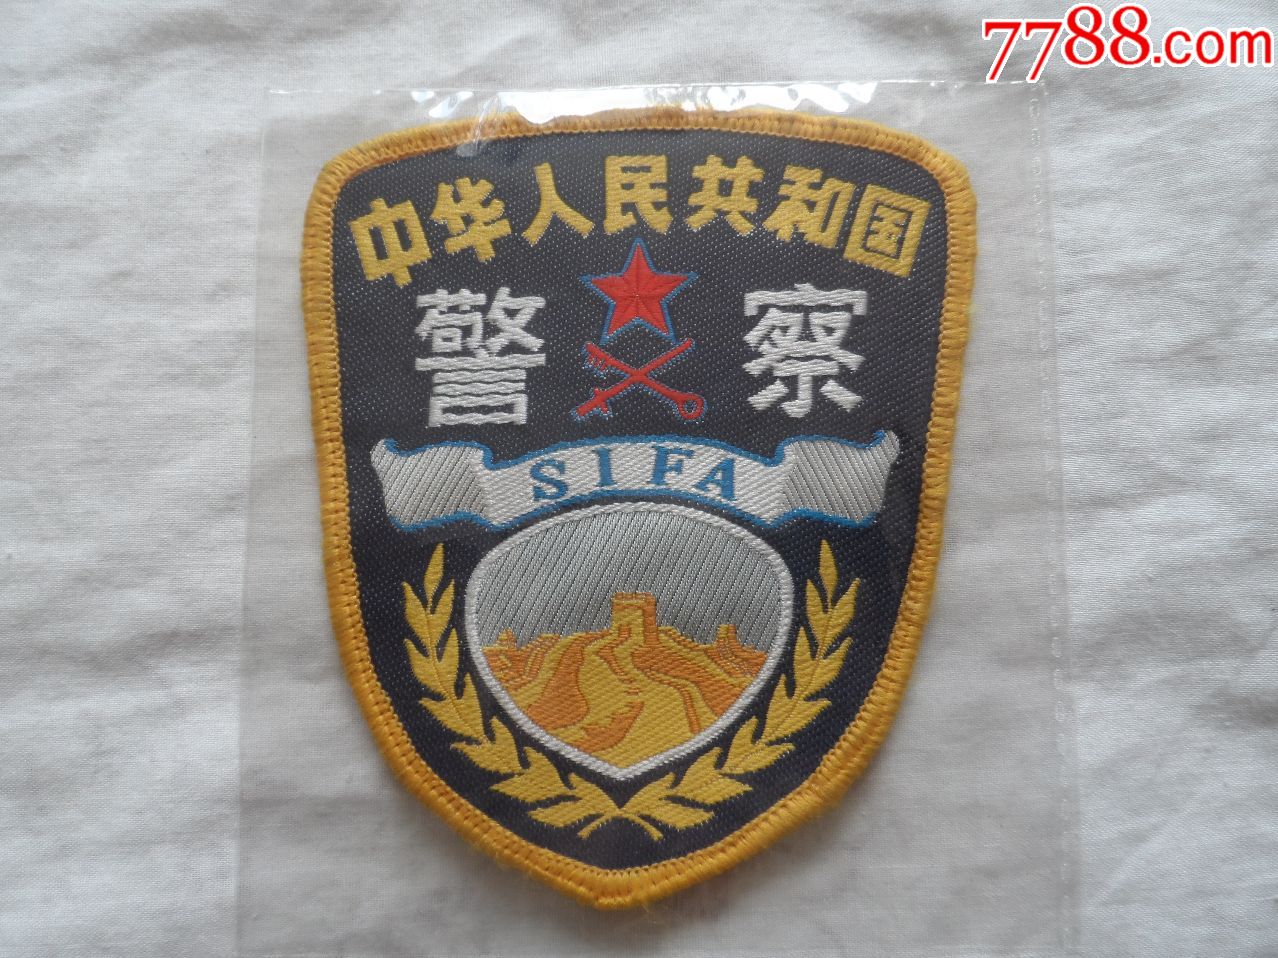 退役的中华人民共和国警察臂章【2018—05—03】